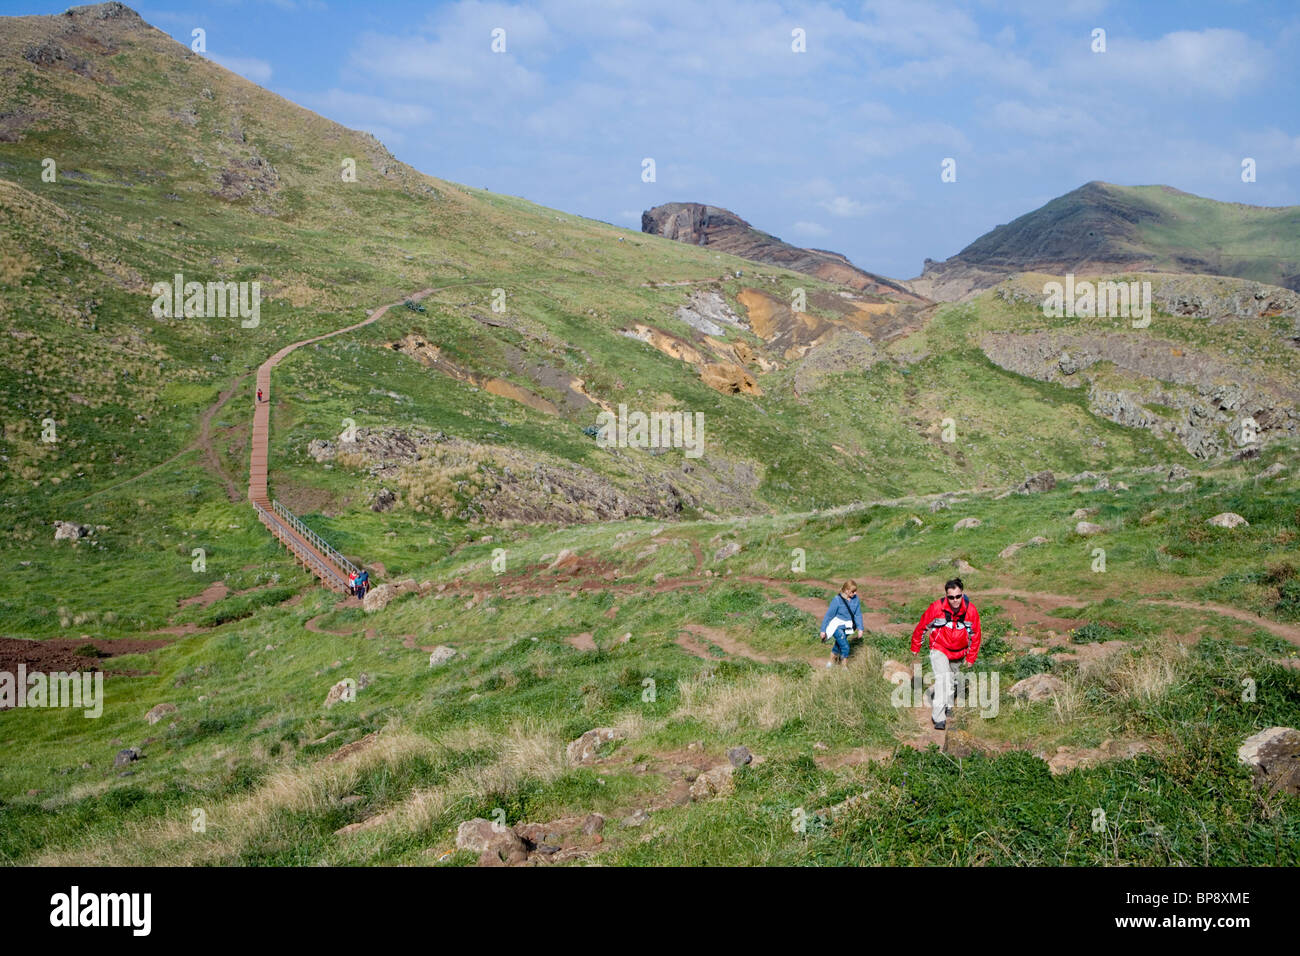 Randonneurs sur une randonnée de Ponta de Sao Laurenco, près de Canical, Madeira, Portugal Banque D'Images